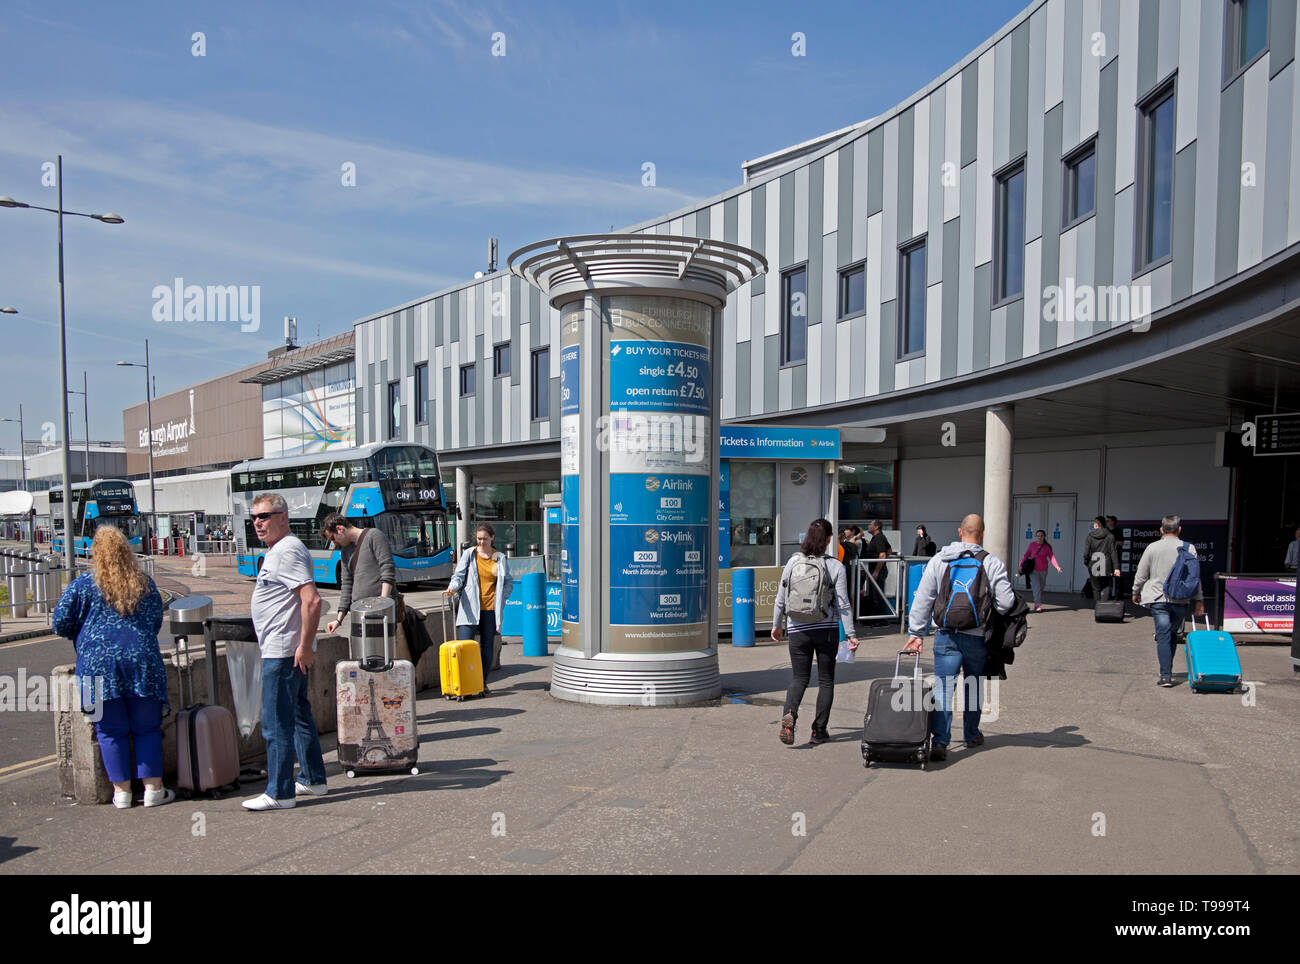 L'aéroport d'Édimbourg, Écosse, Royaume-Uni Banque D'Images